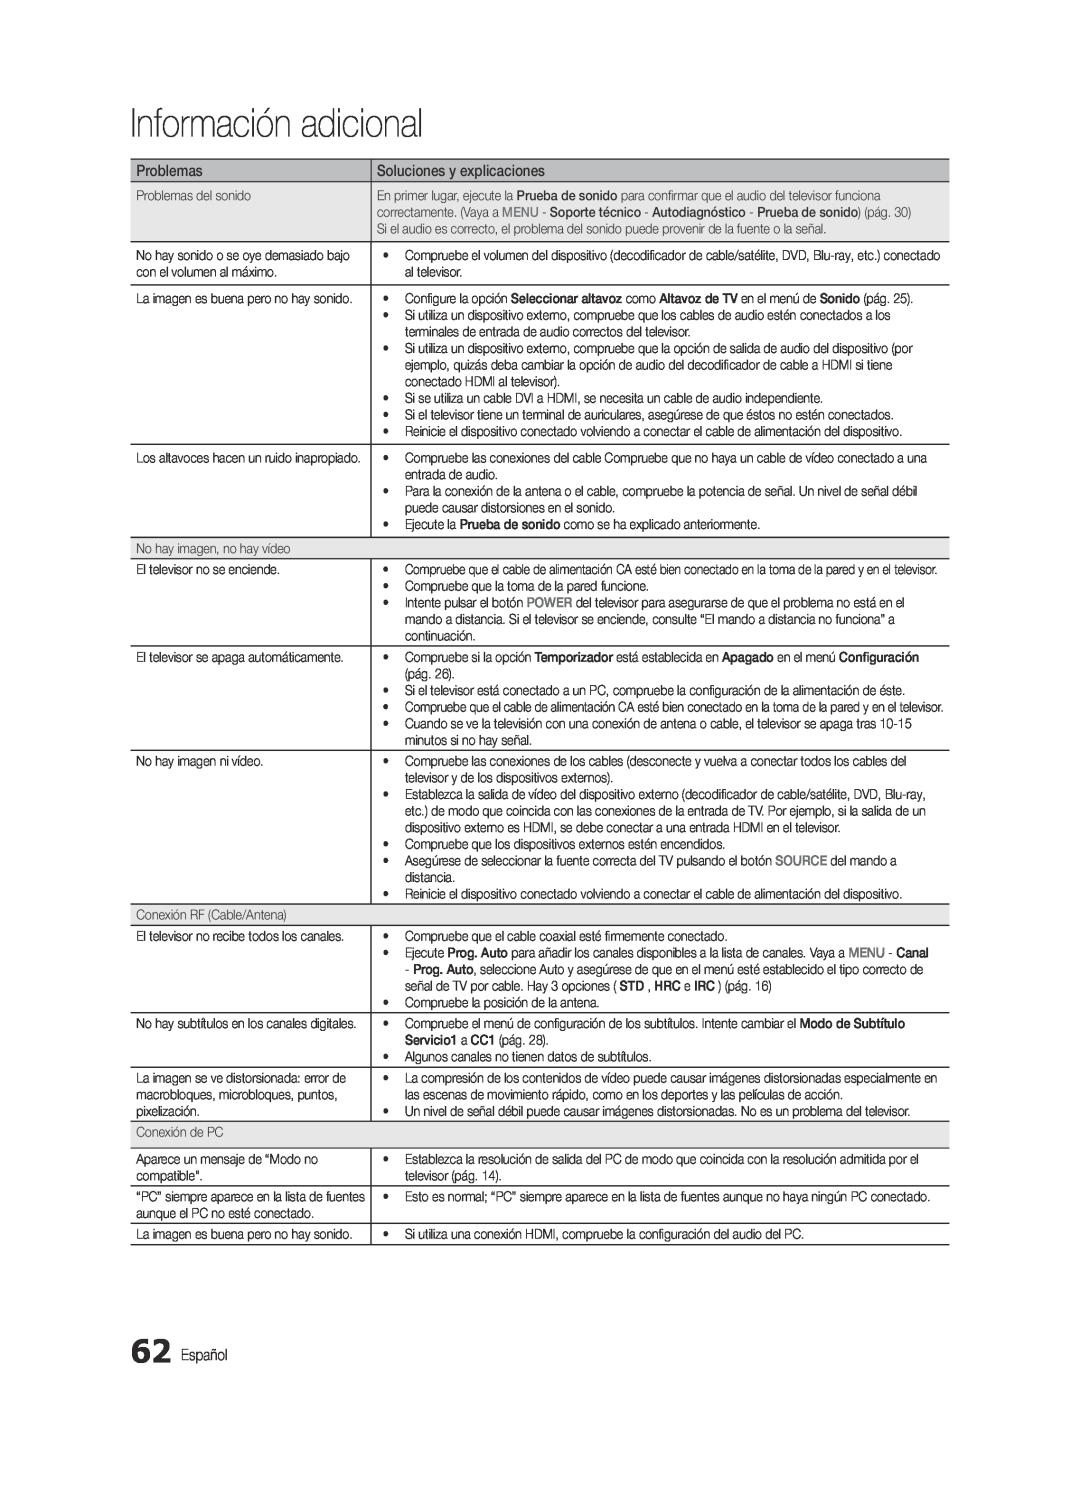 Samsung BN68-03088A-01, Series C9 user manual Información adicional, Problemas, Soluciones y explicaciones, Español 